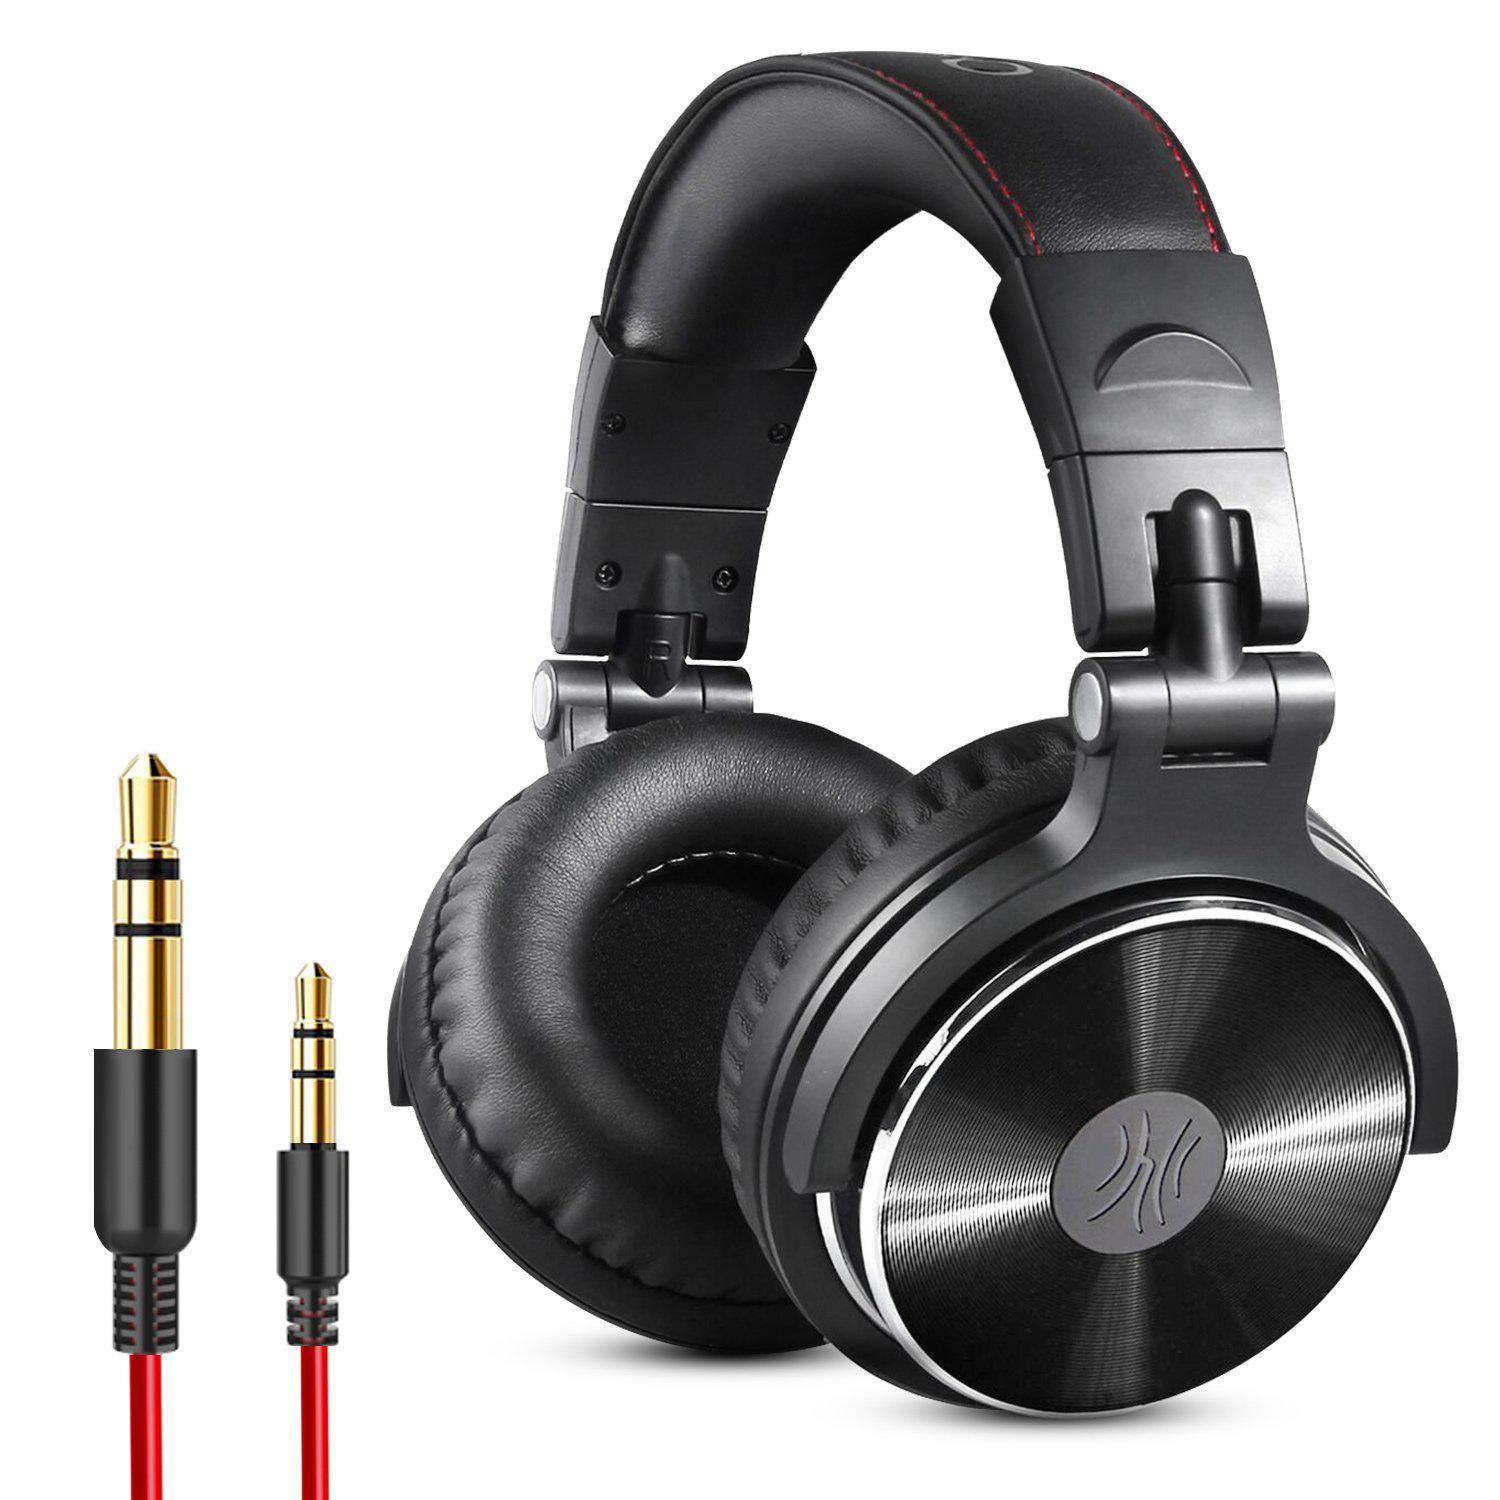 OneOdio Pro 10 Wired Headphones - Black